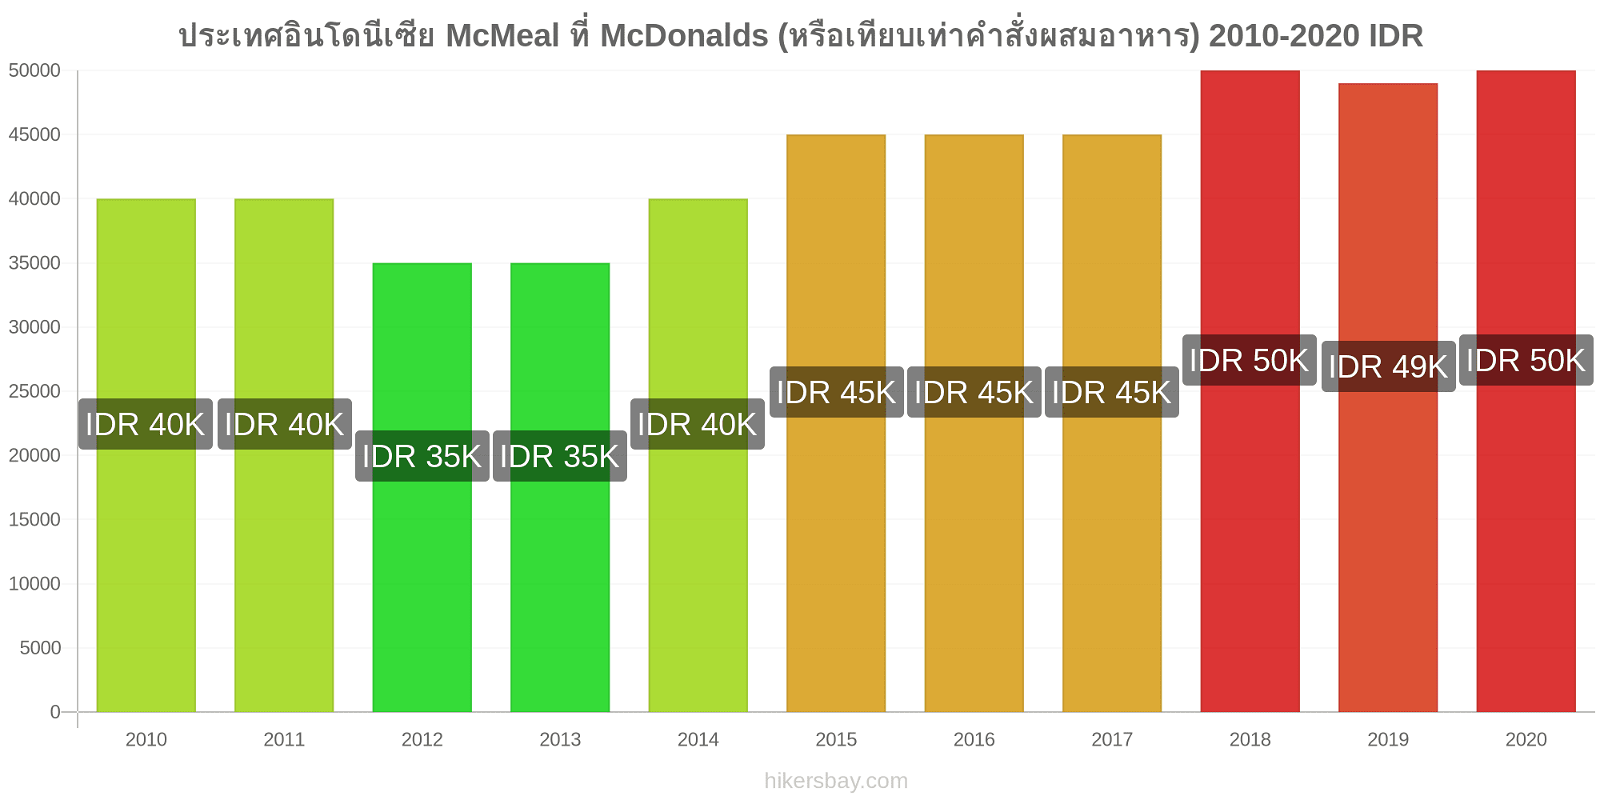 ประเทศอินโดนีเซีย การเปลี่ยนแปลงราคา McMeal ที่ McDonalds (หรือเทียบเท่าคำสั่งผสมอาหาร) hikersbay.com